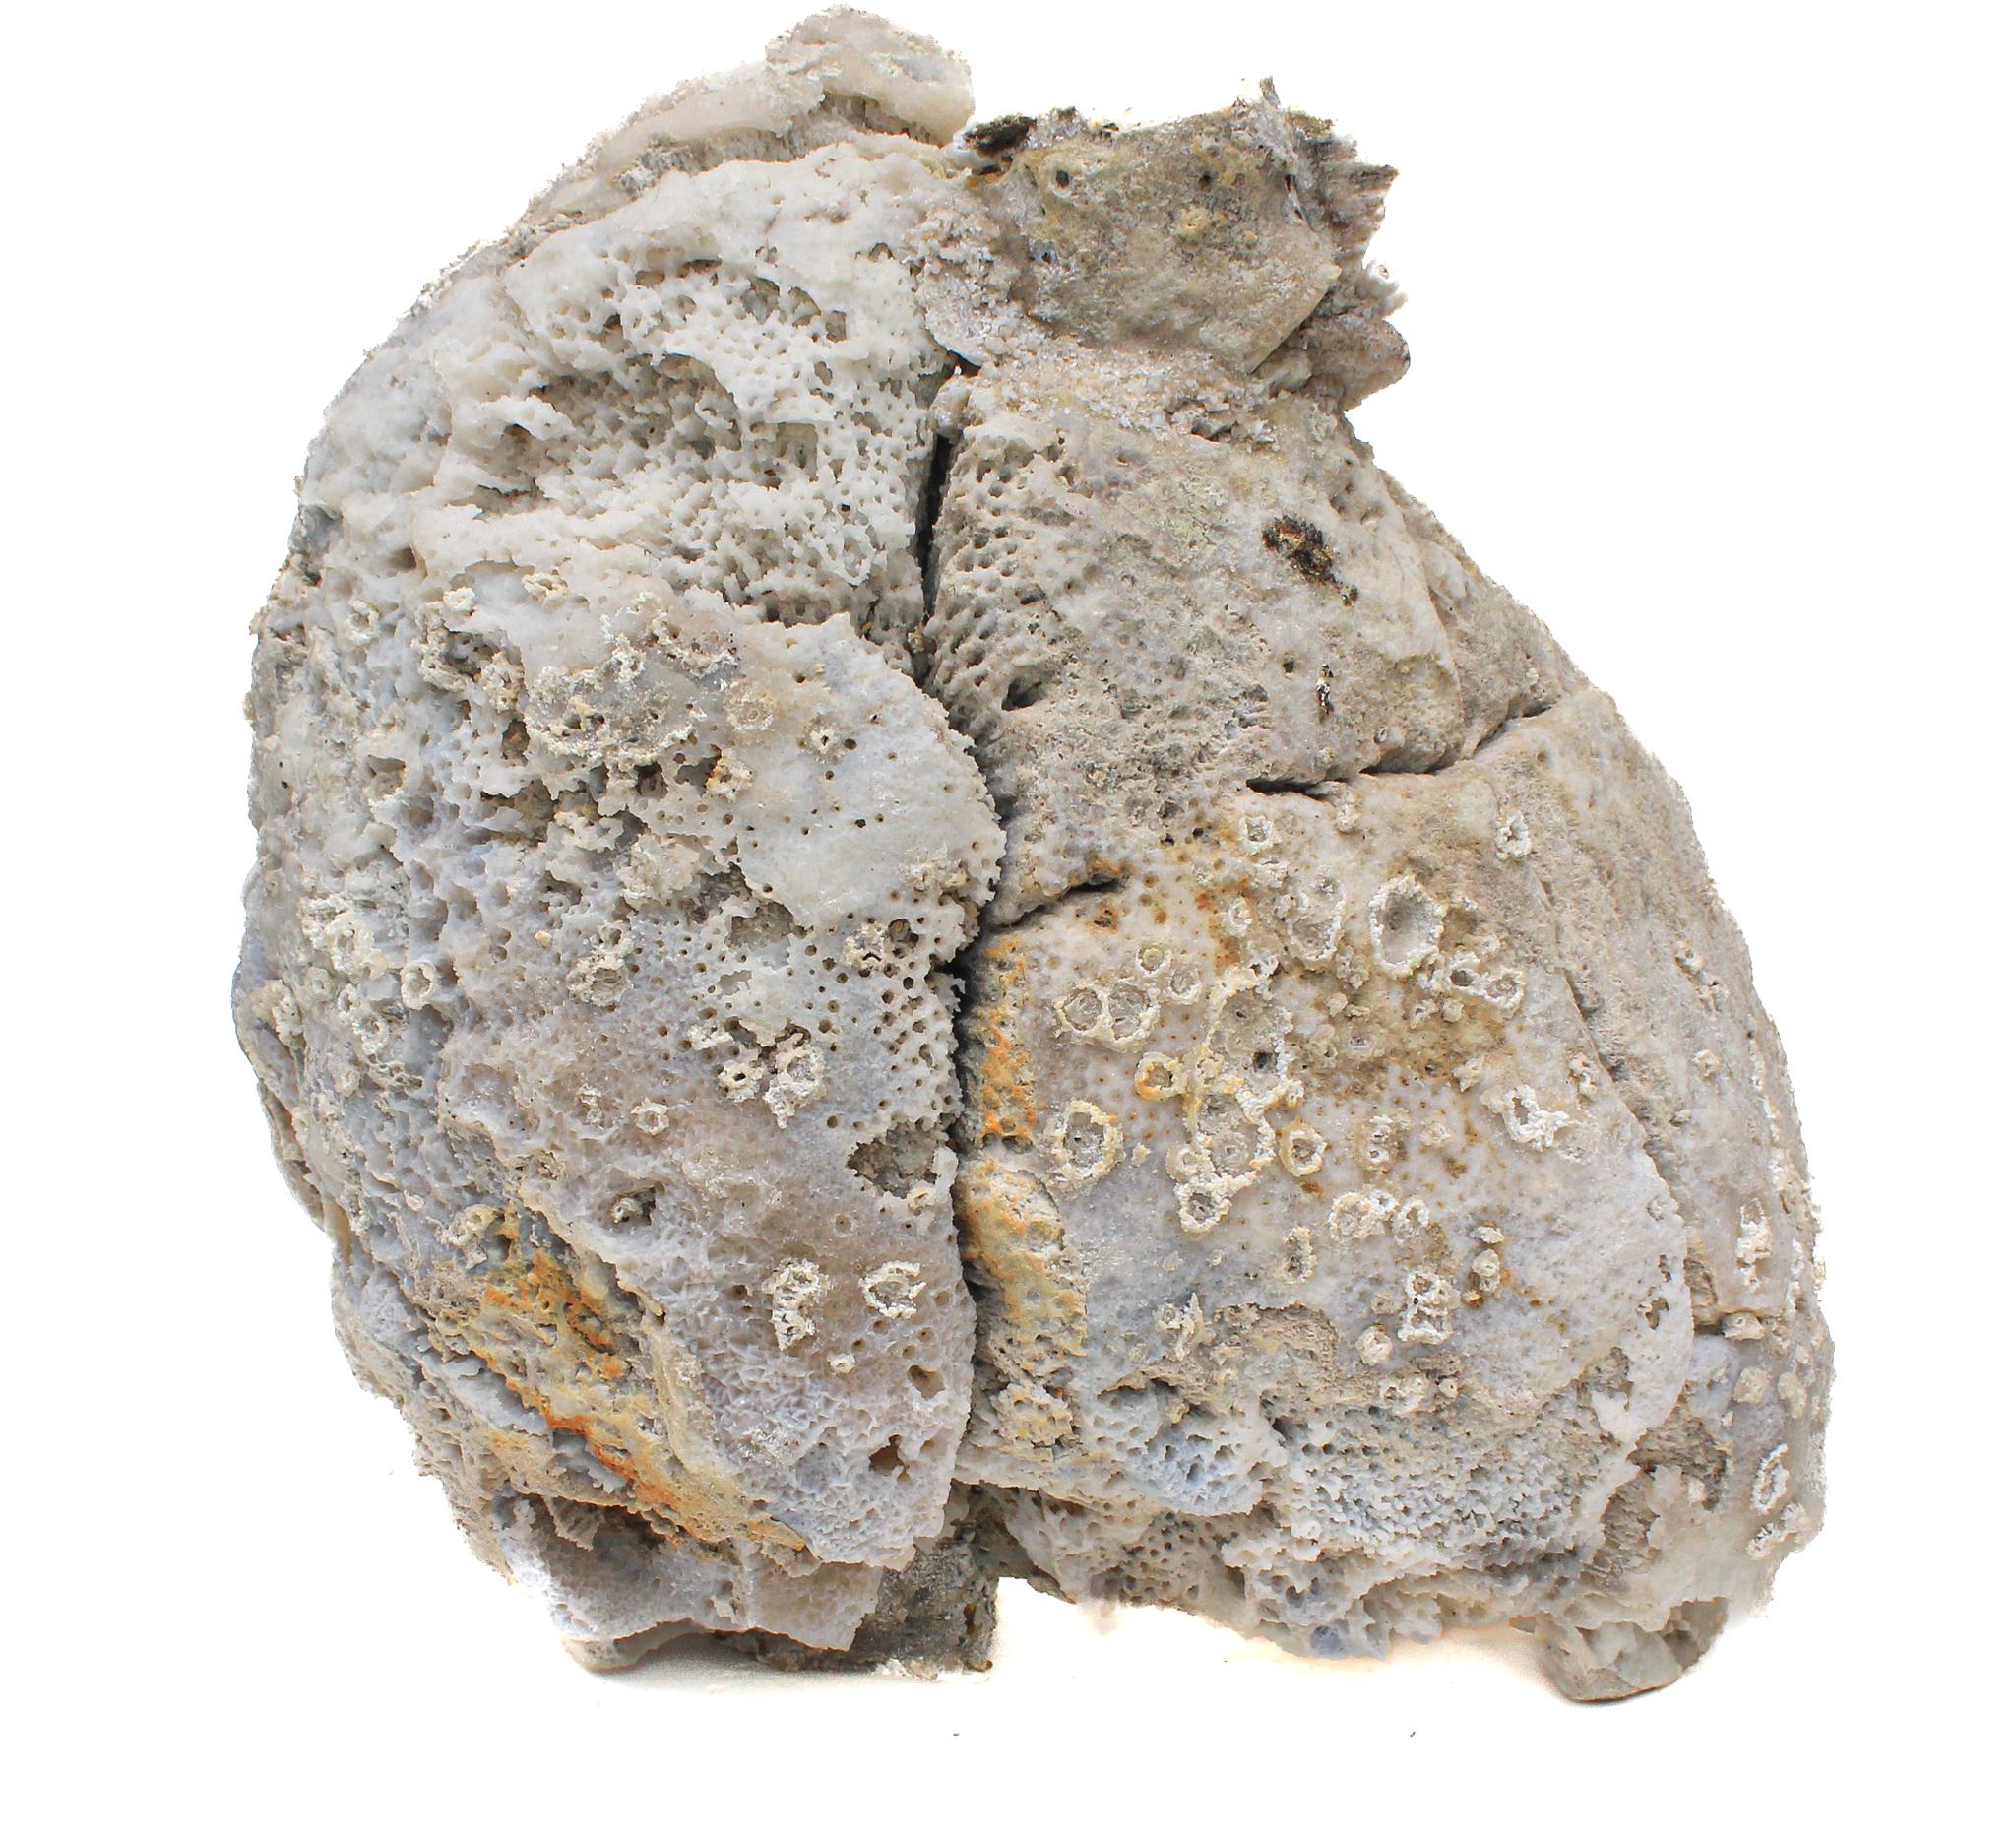 Fossile Achatkoralle mit schillernden fossilen Ammoniten verziert.

Das graue Stück fossiler Achatkoralle ist geschliffen und poliert und mit den schillernden Ammoniten verziert, die perfekt mit dem Mineral harmonieren. Dieses besondere Stück